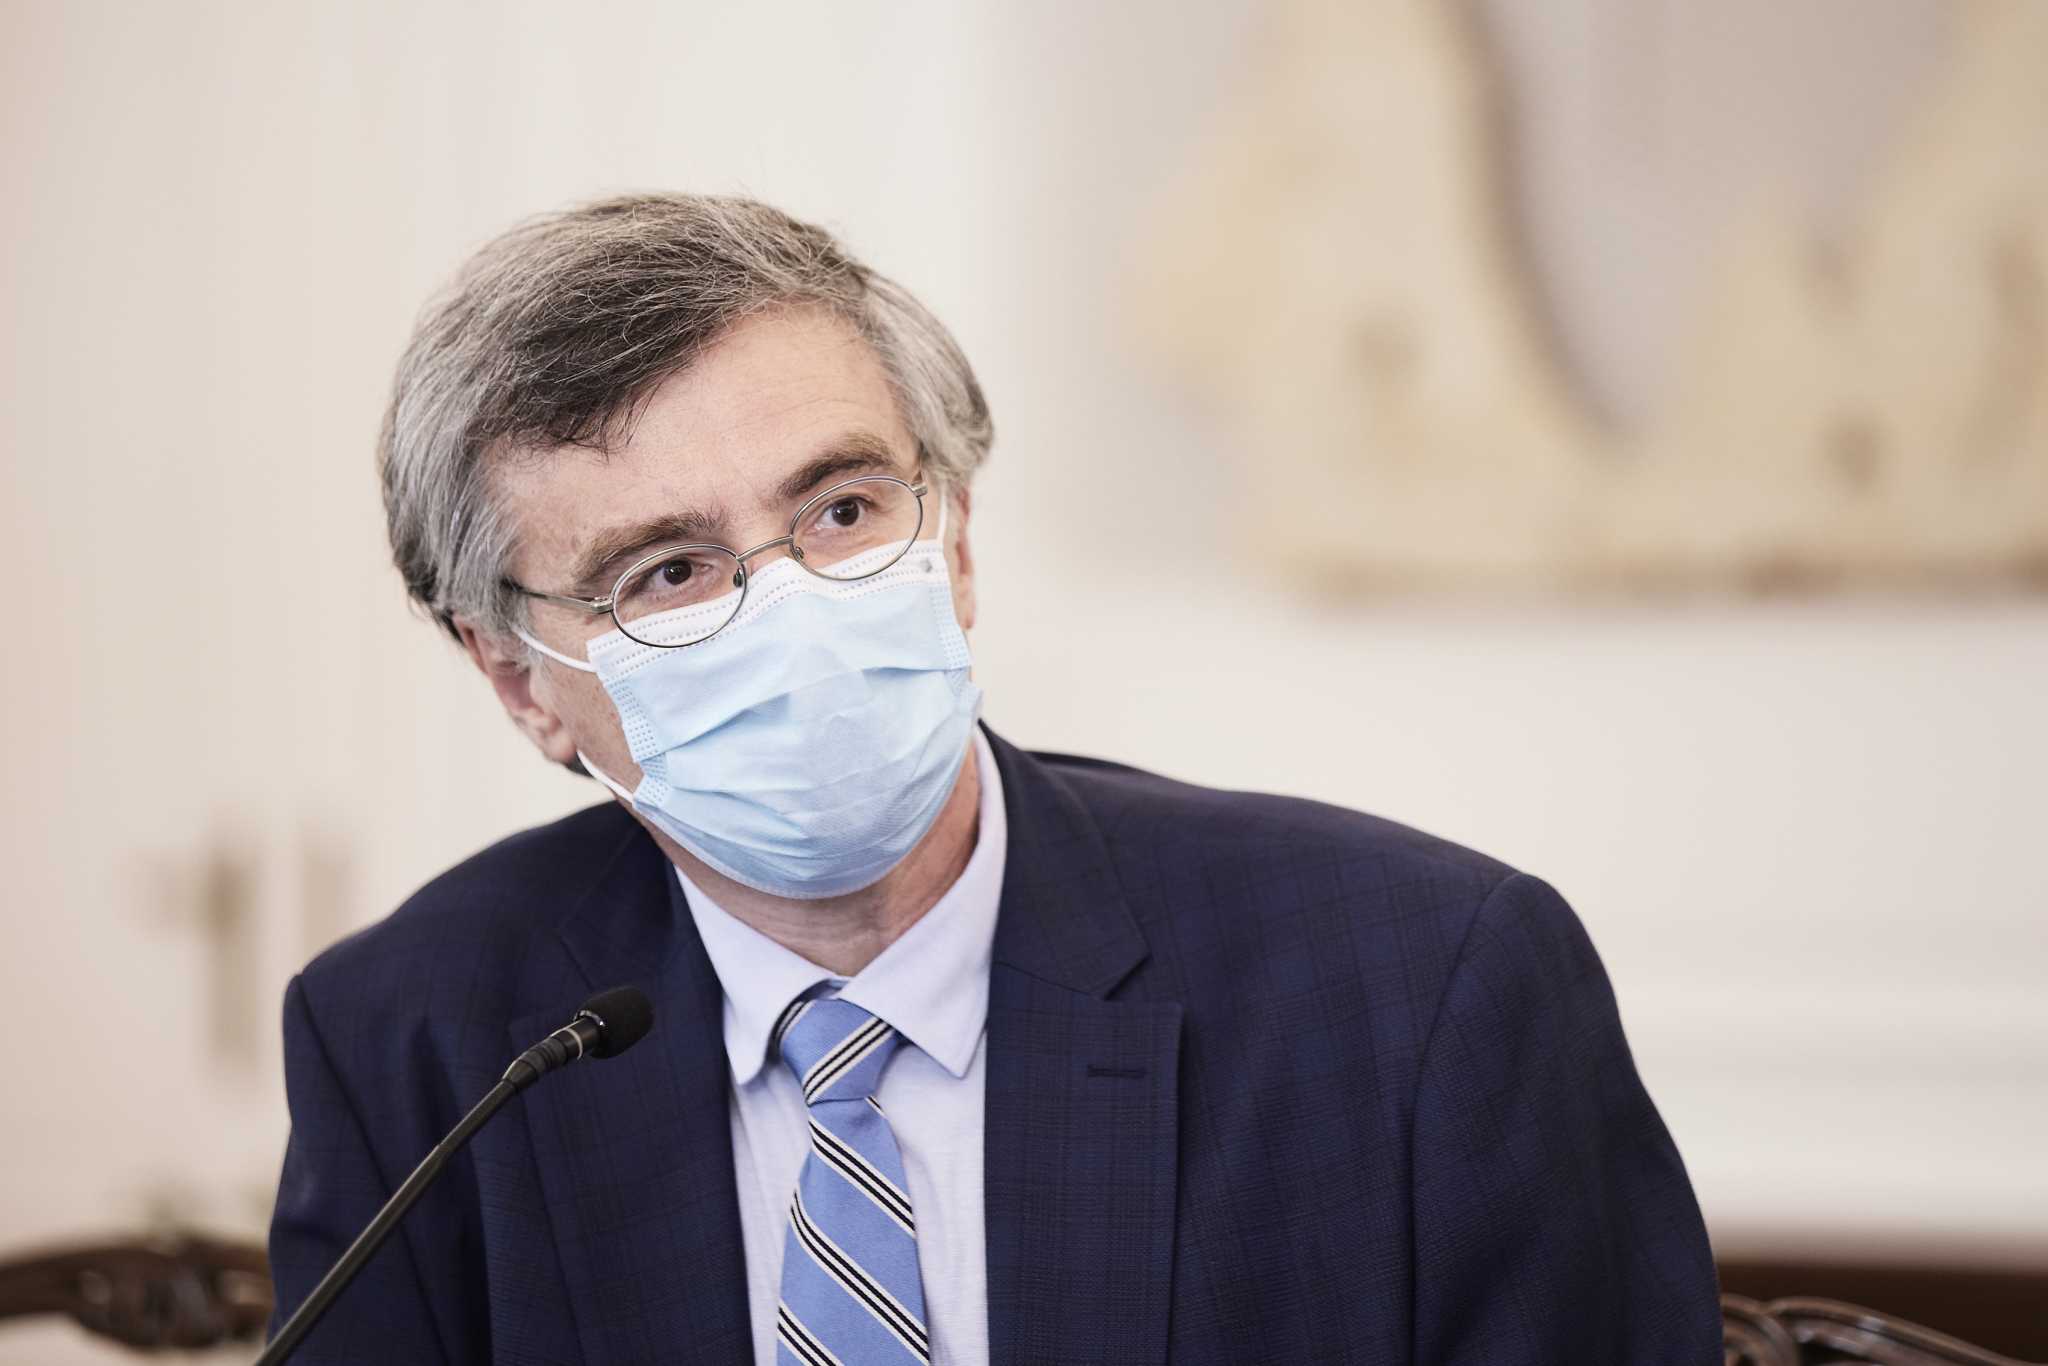 Ιατρική ΕΚΠΑ: Επιτροπή Δημόσιας Υγείας και Αντιμετώπισης της Πανδημίας με συντονιστή τον Σ. Τσιόδρα